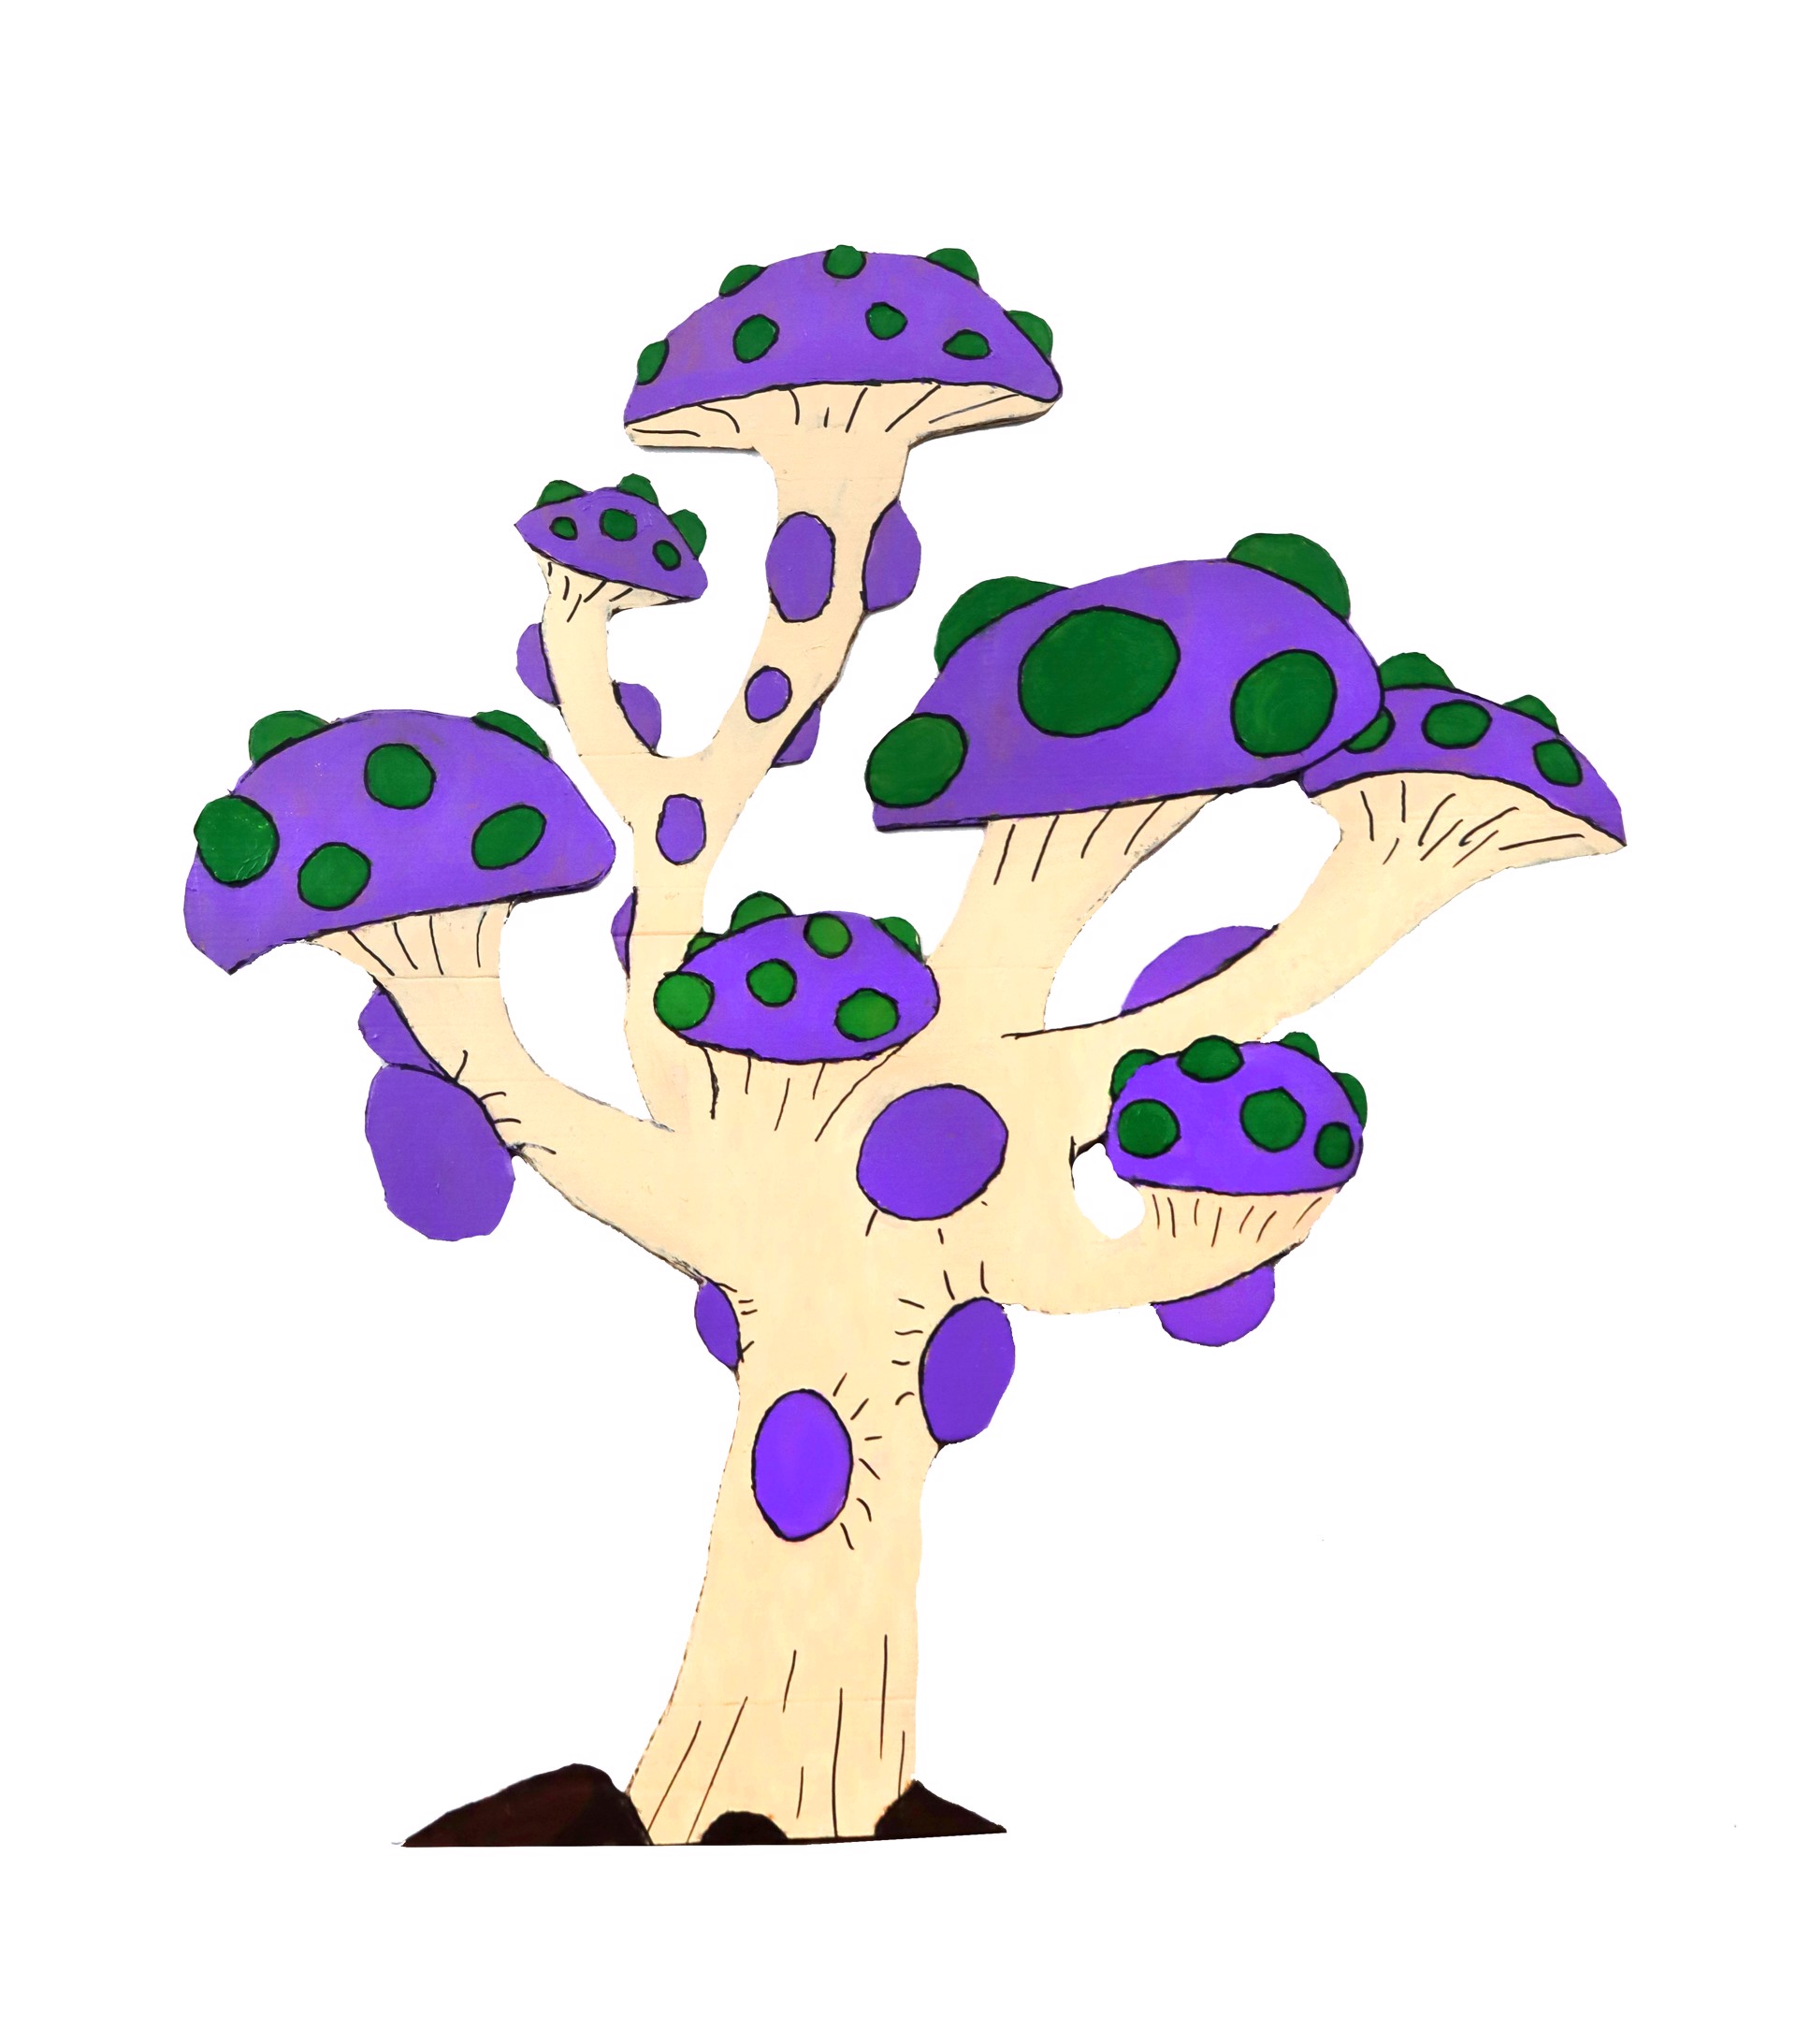 Mushroom Tree by Eric Kendrick